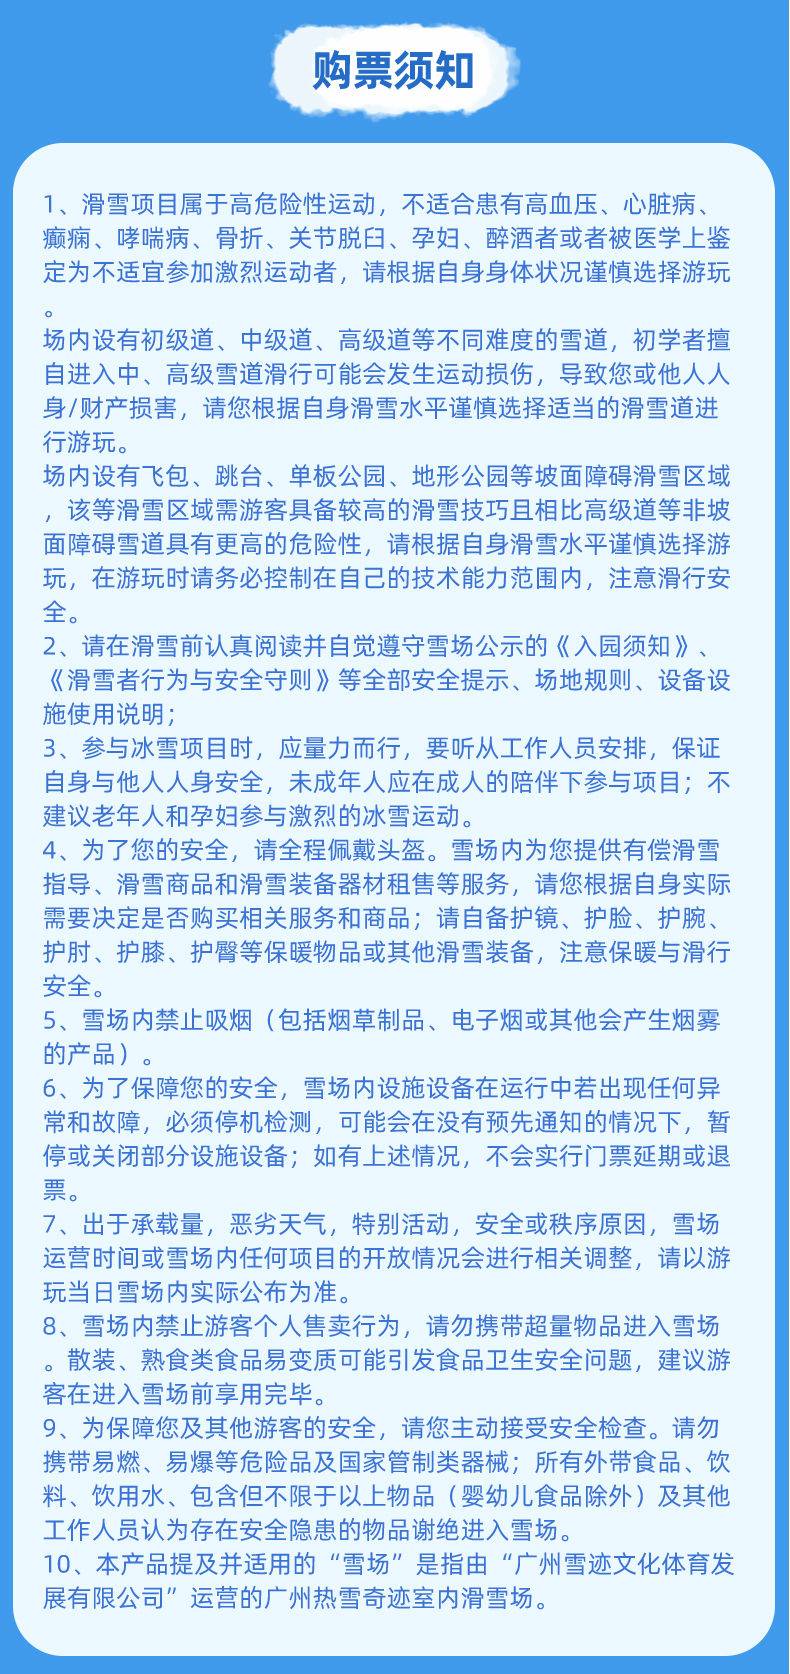 【五一促销】广州热雪奇迹初/中级道3小时滑雪双人票(适用日期：5.1-5.5)